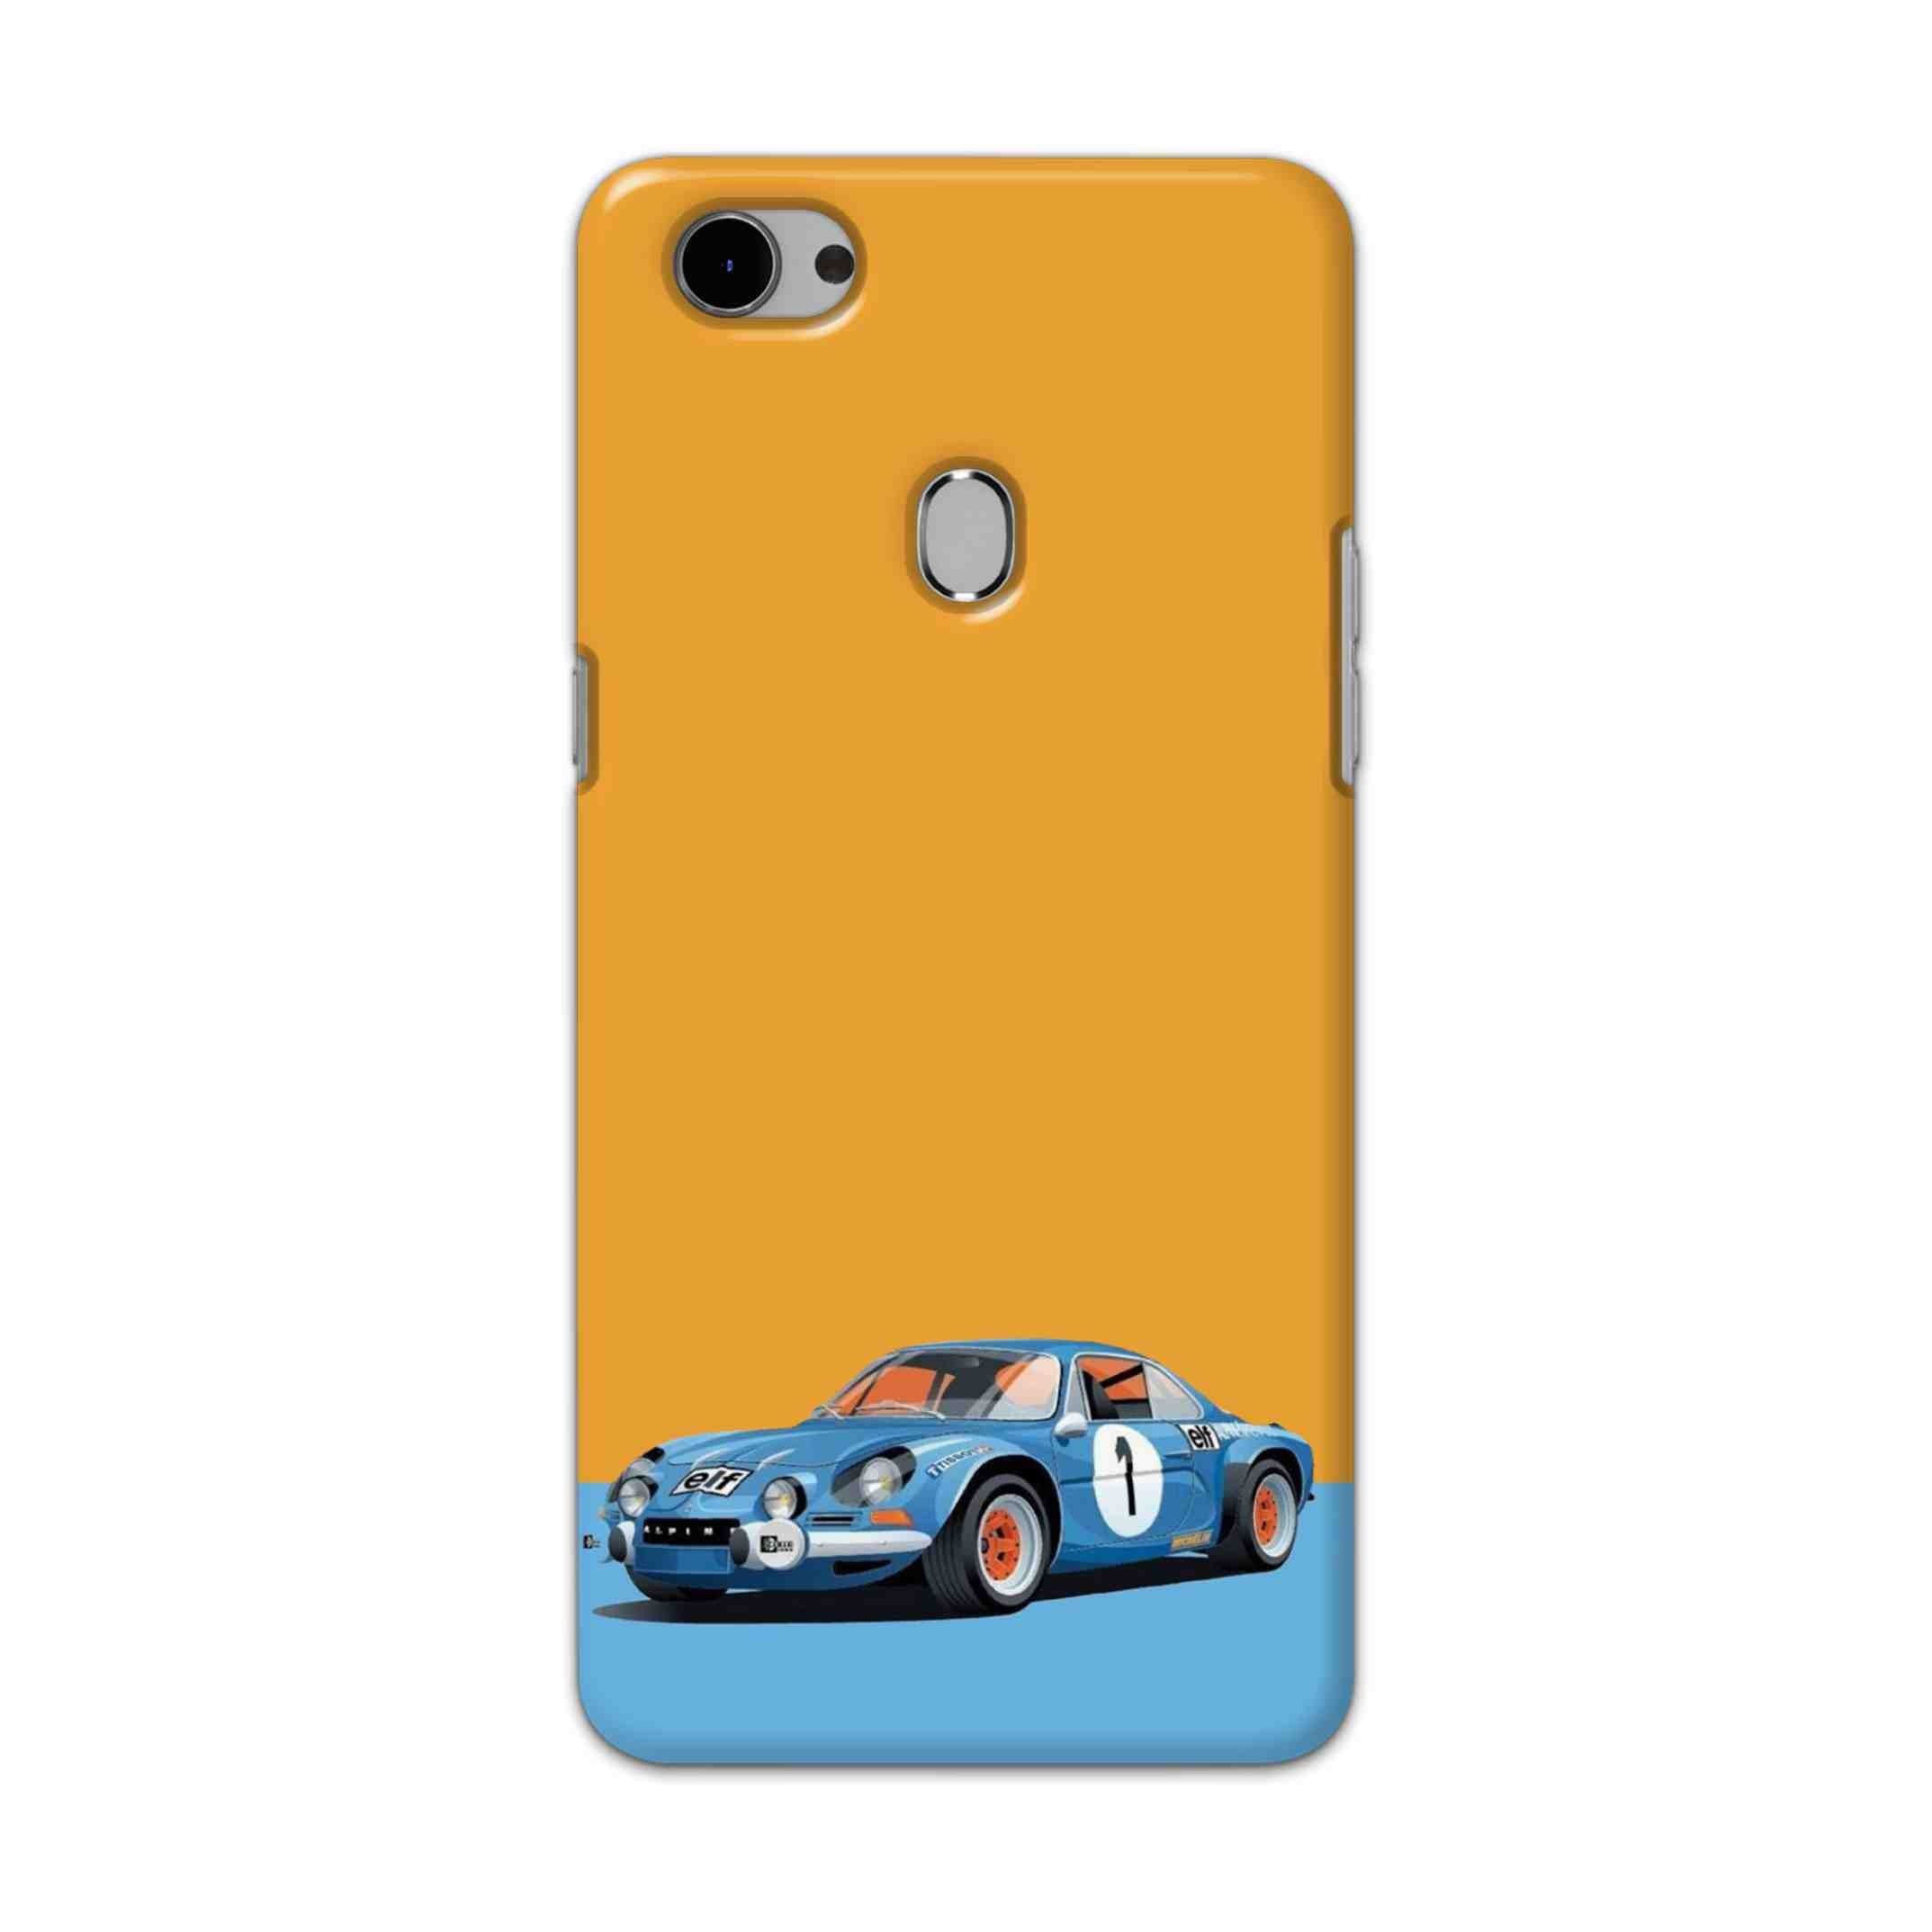 Buy Ferrari F1 Hard Back Mobile Phone Case Cover For Oppo F7 Online